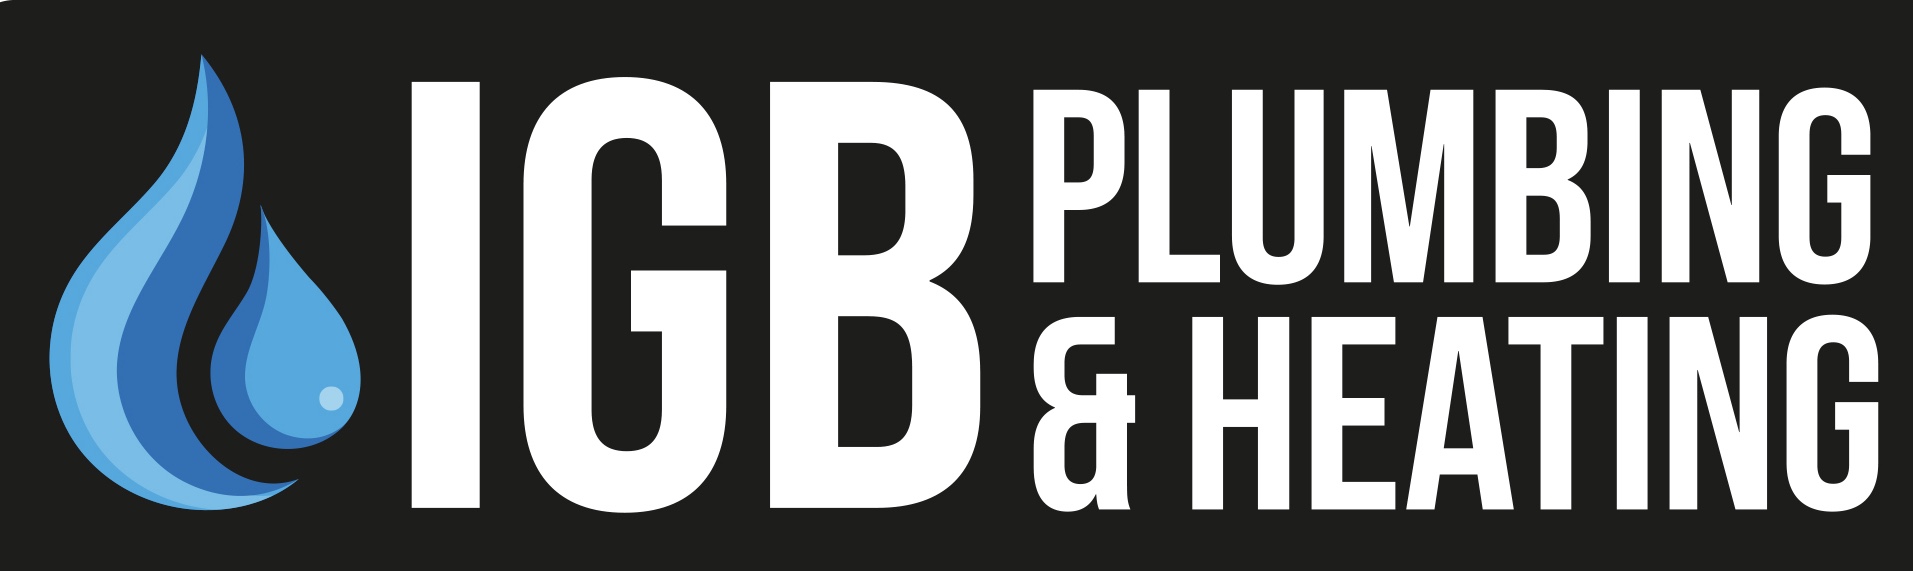 igb plumbing & heating, IGB, logo